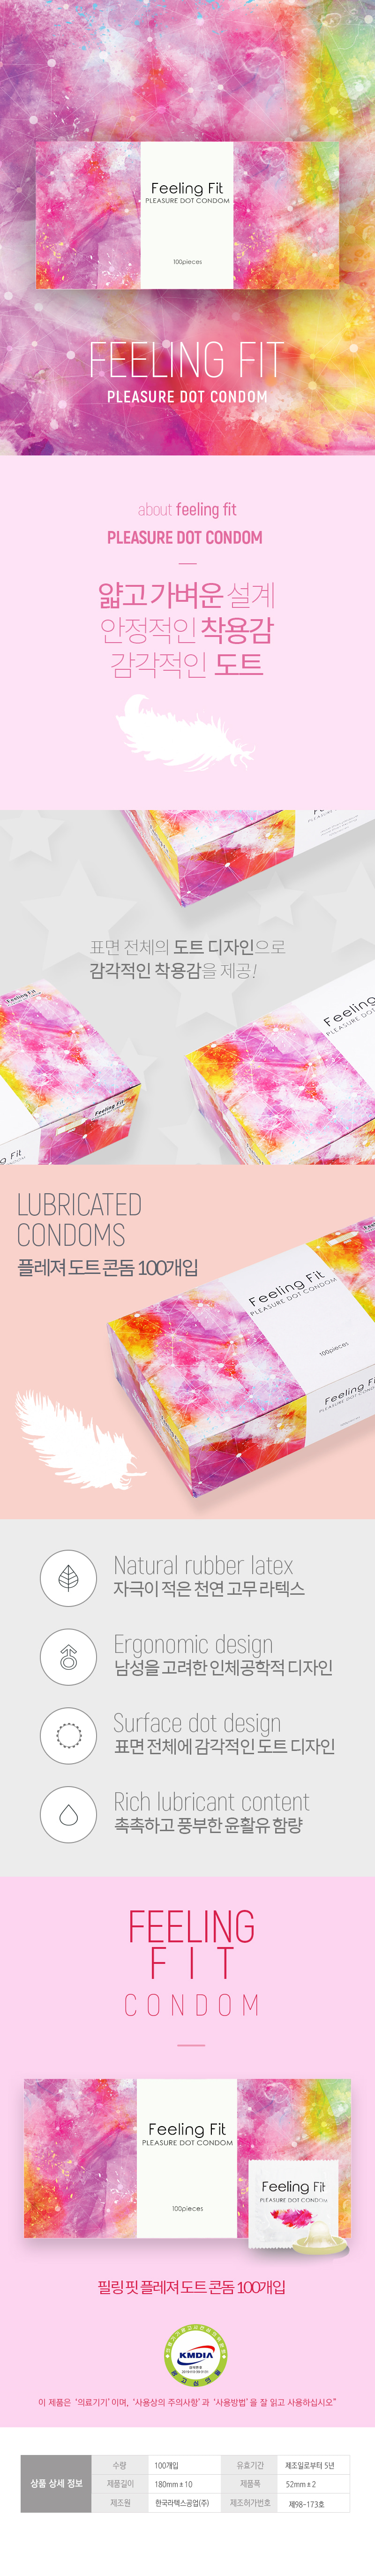 필링 핏 플레져 도트 콘돔 100P